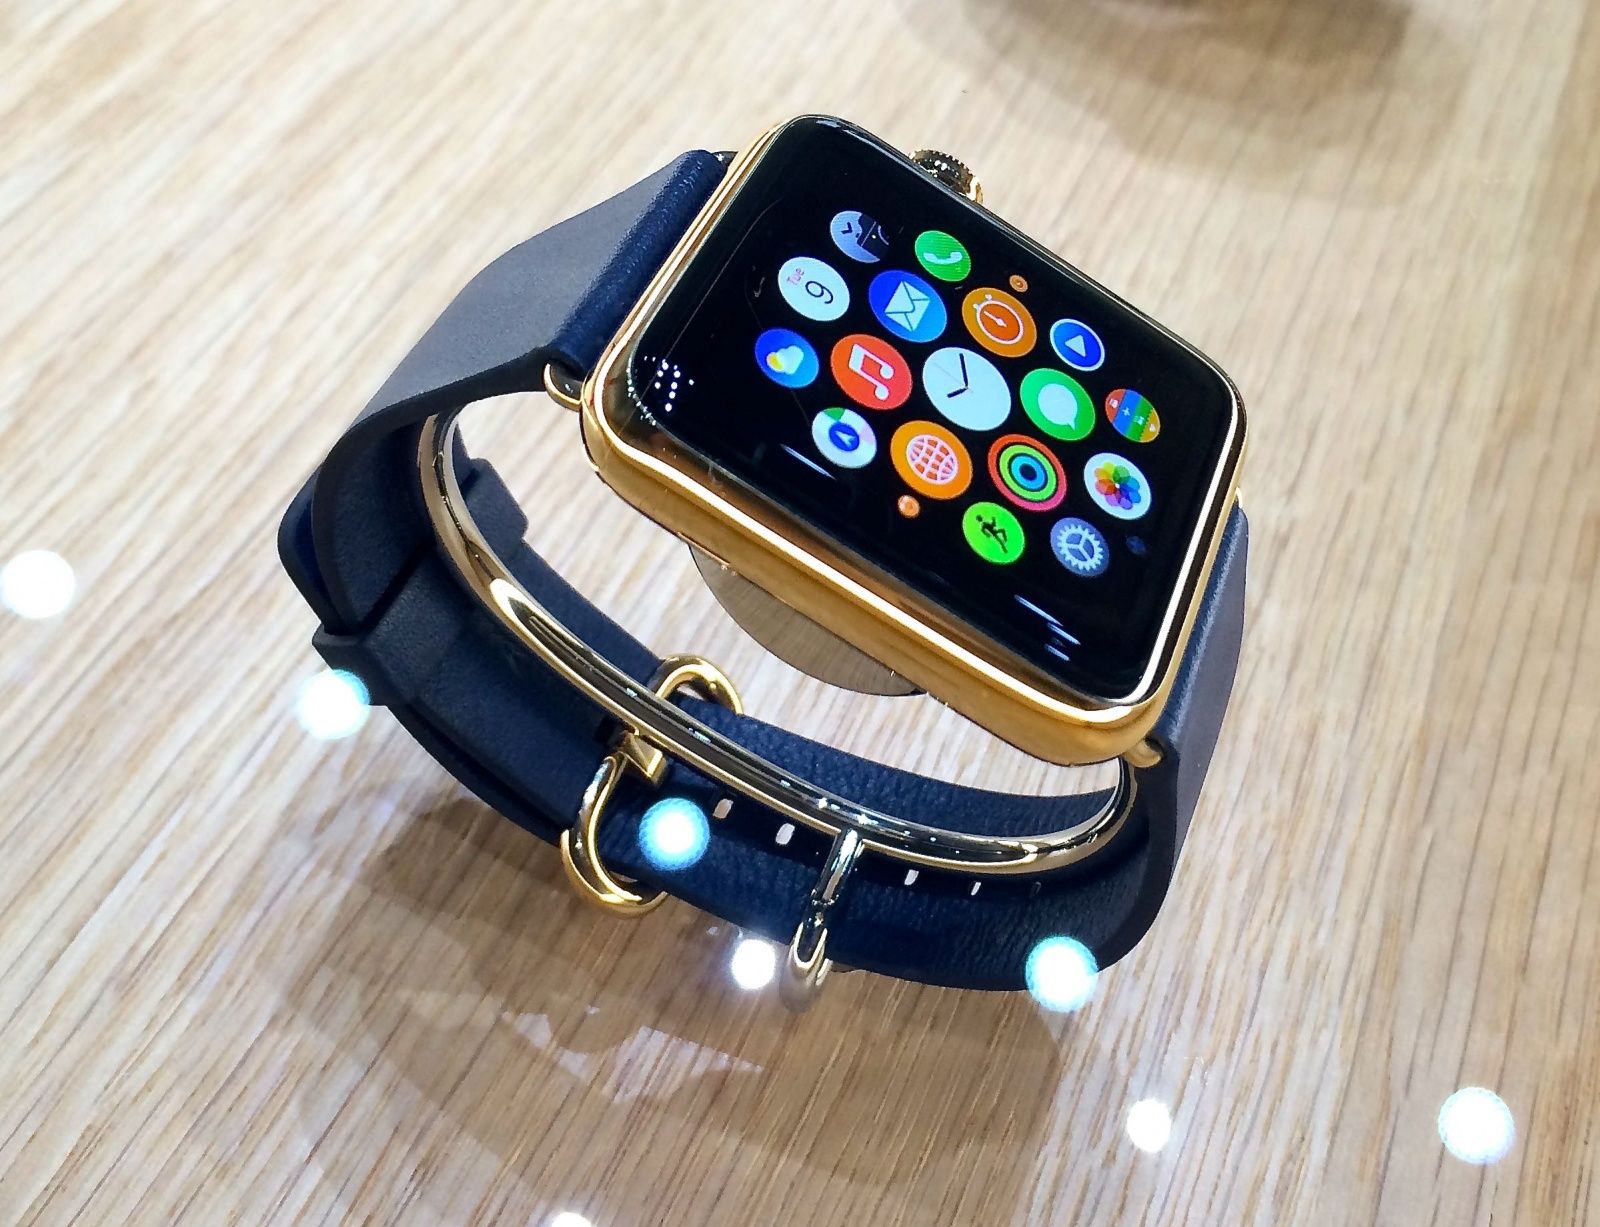 Apple Watch đang giành được nhiều sự chú ý từ giới công nghệ